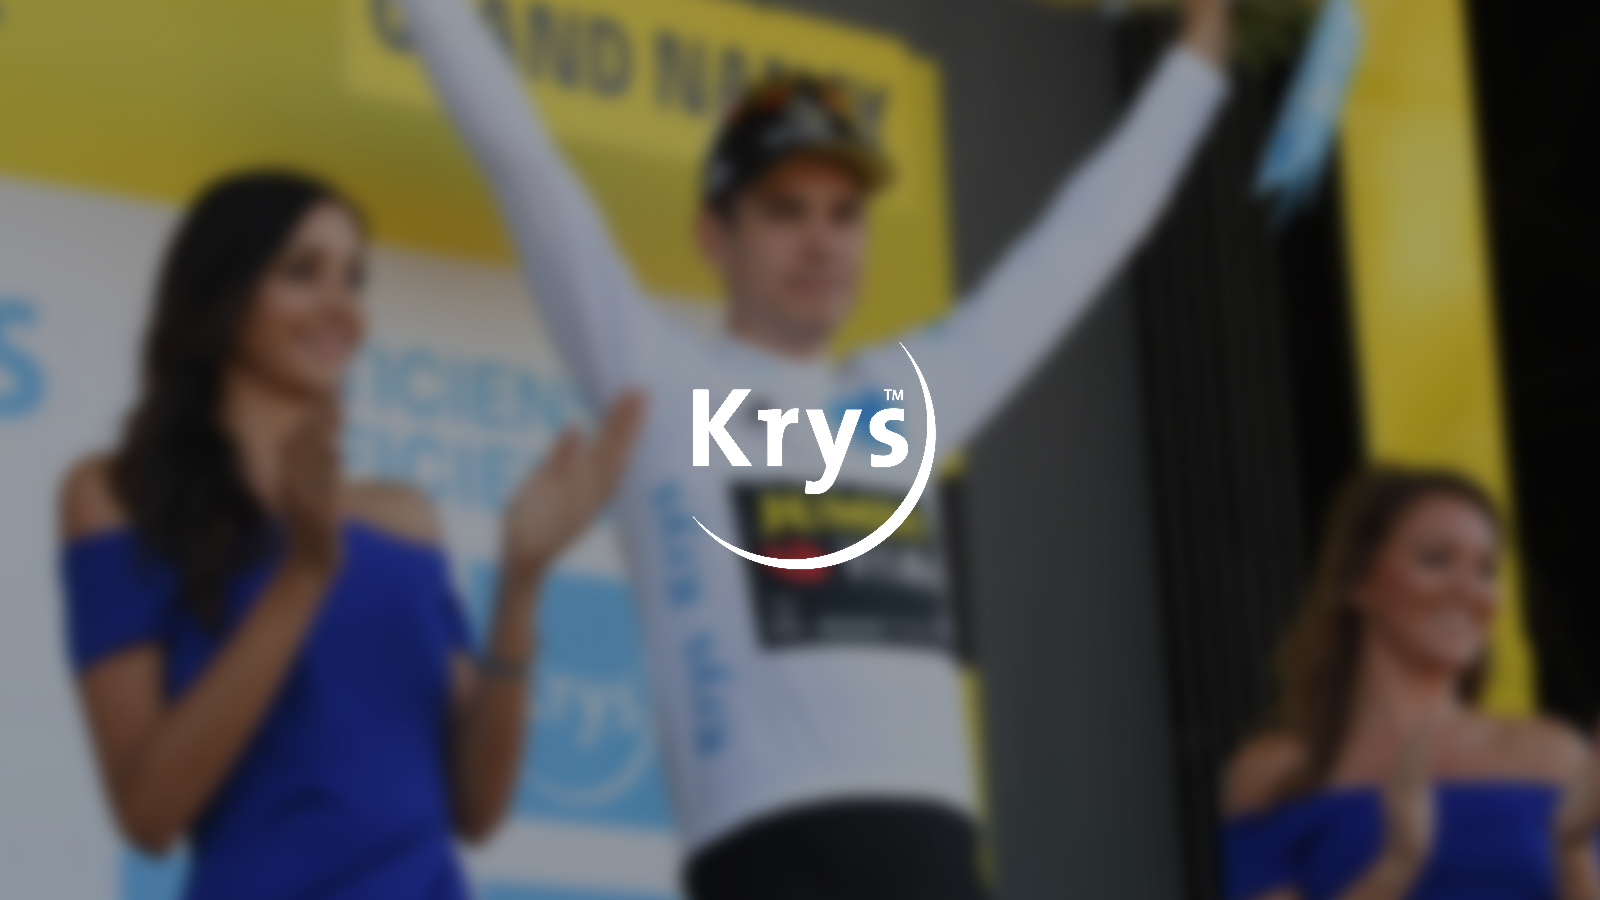 2019 krys - Cas KRYS Tour de France 2019